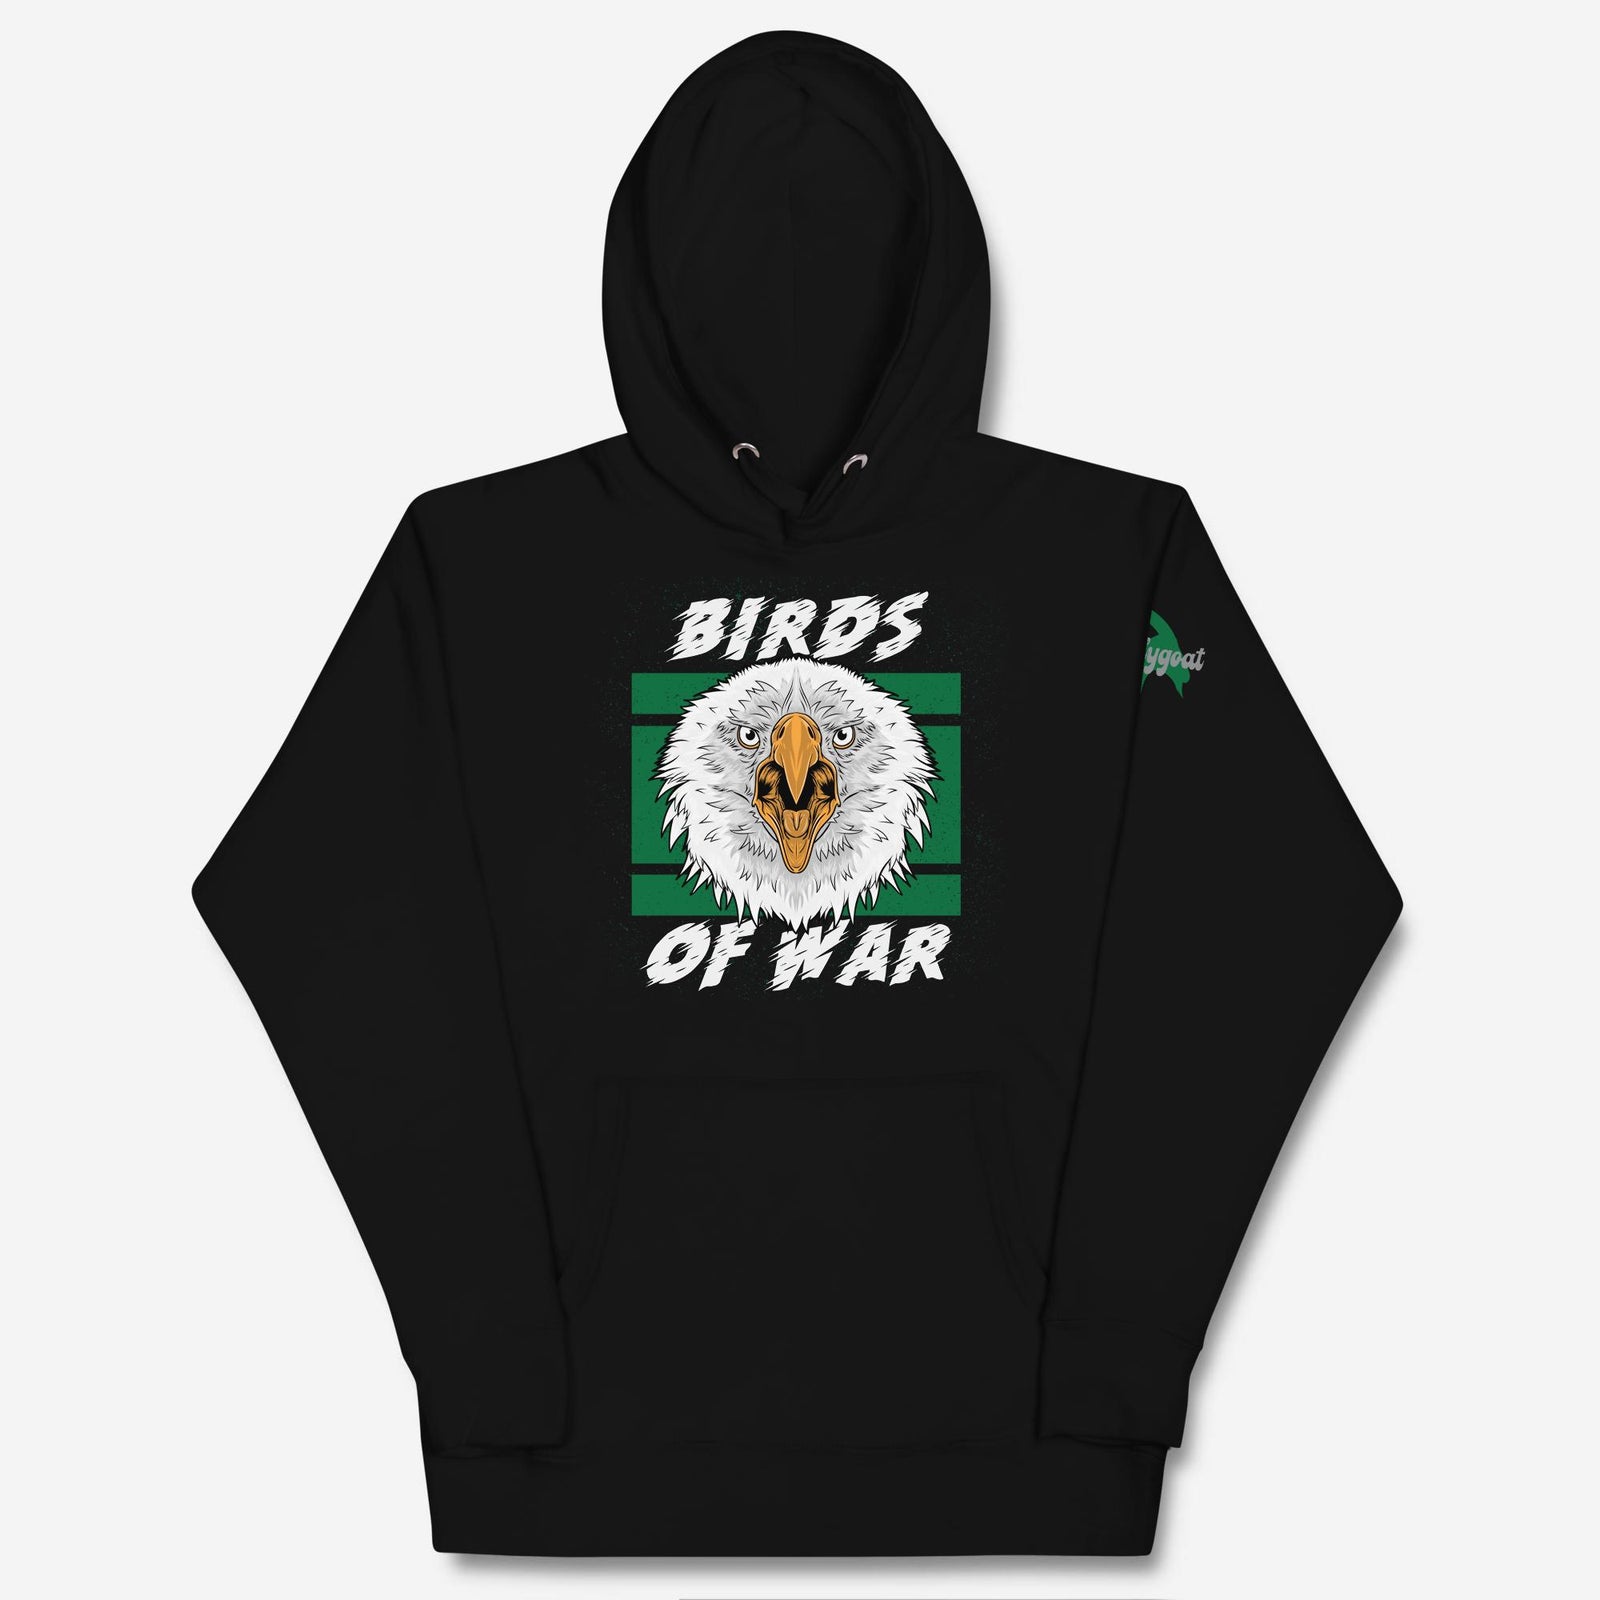 "Birds of War" Hoodie